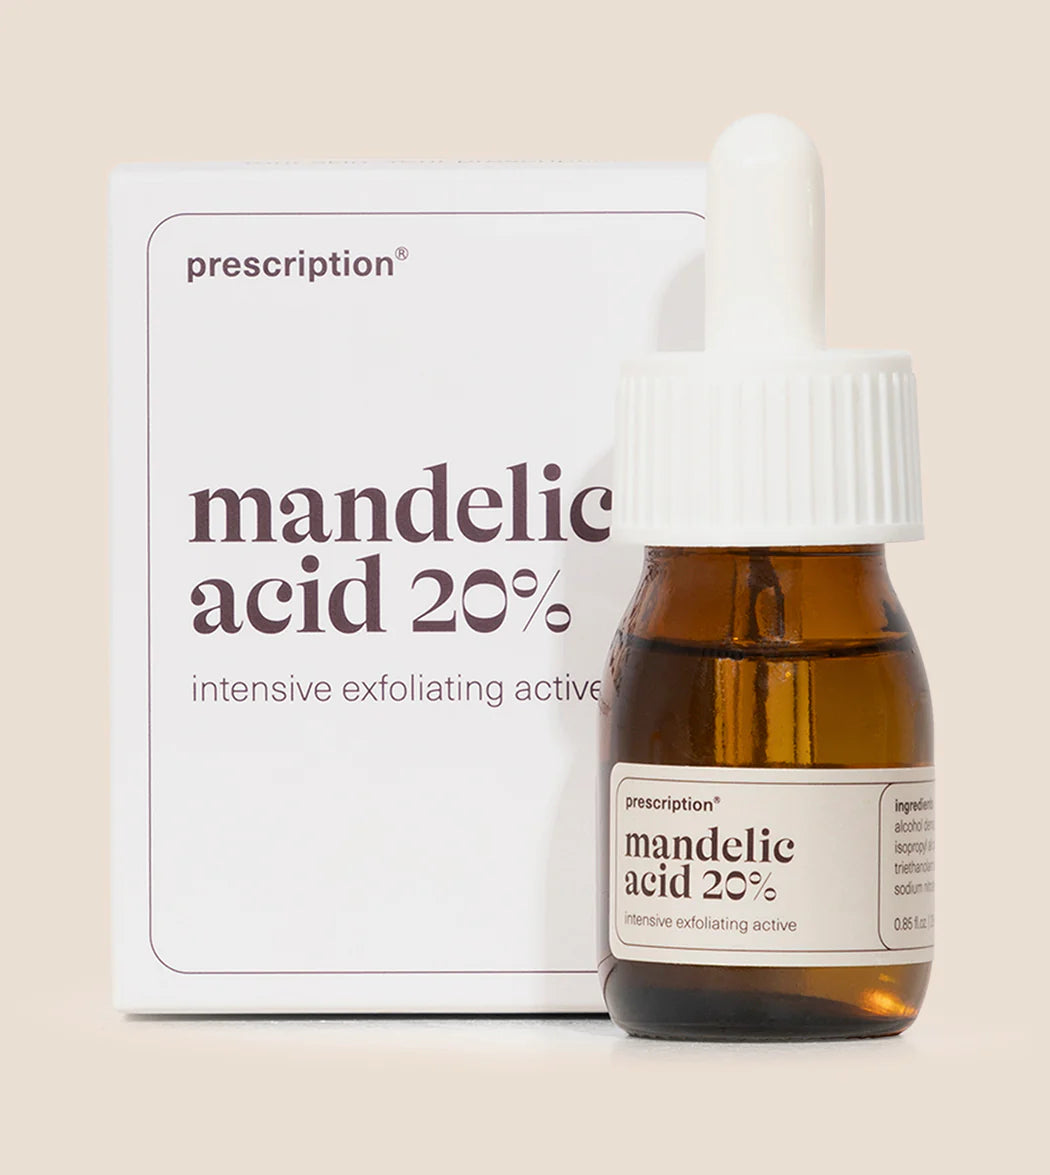 Prescription - mandelic acid 20%